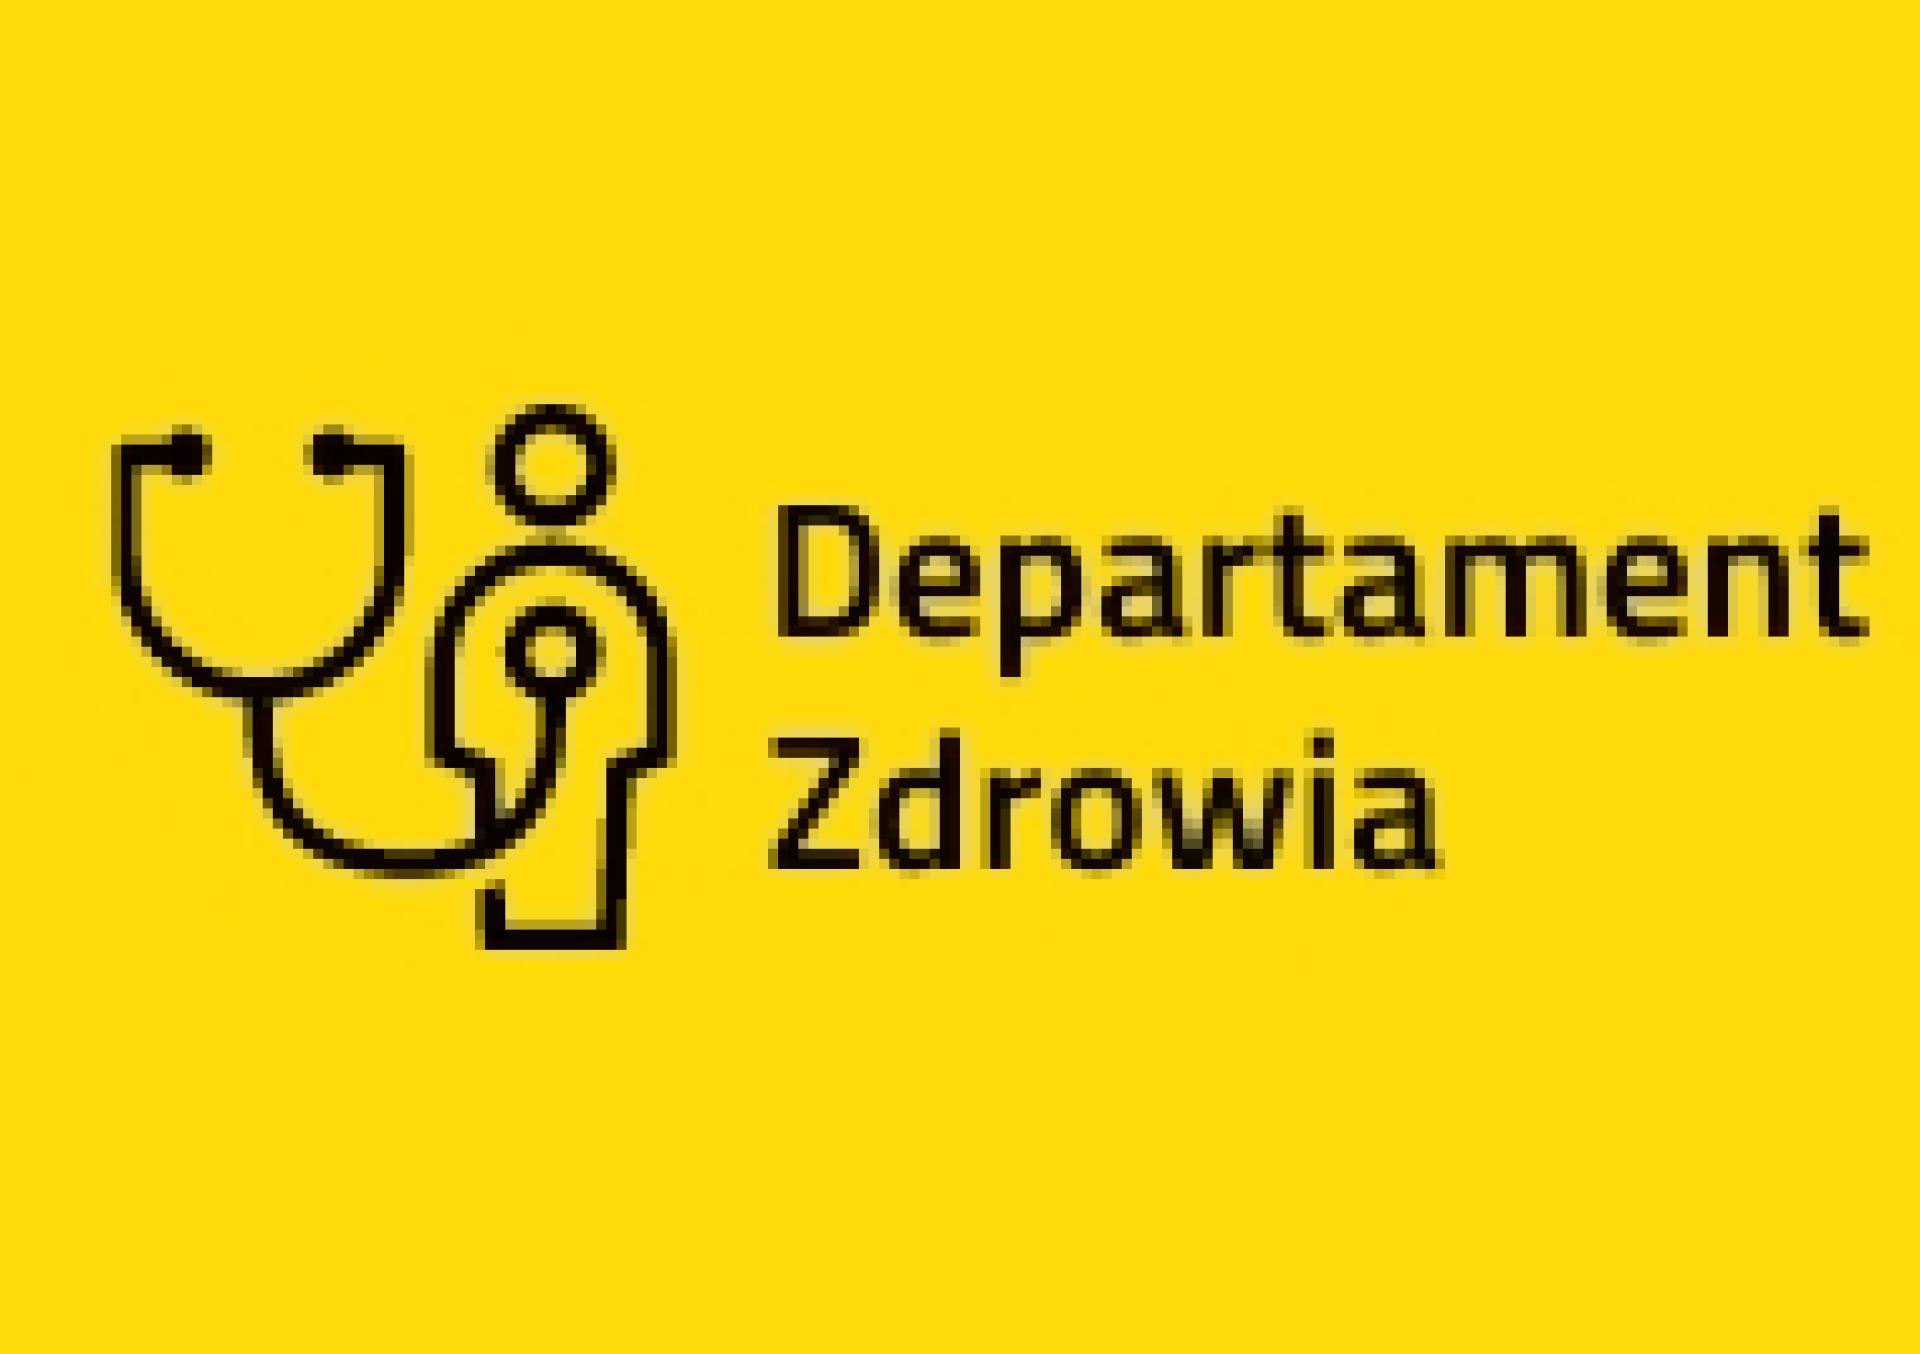 Konsultacje projektu uchwały Sejmiku zmieniającej uchwałę w sprawie nadania statutu Wielkopolskiemu Centrum Medycyny Pracy - zobacz więcej